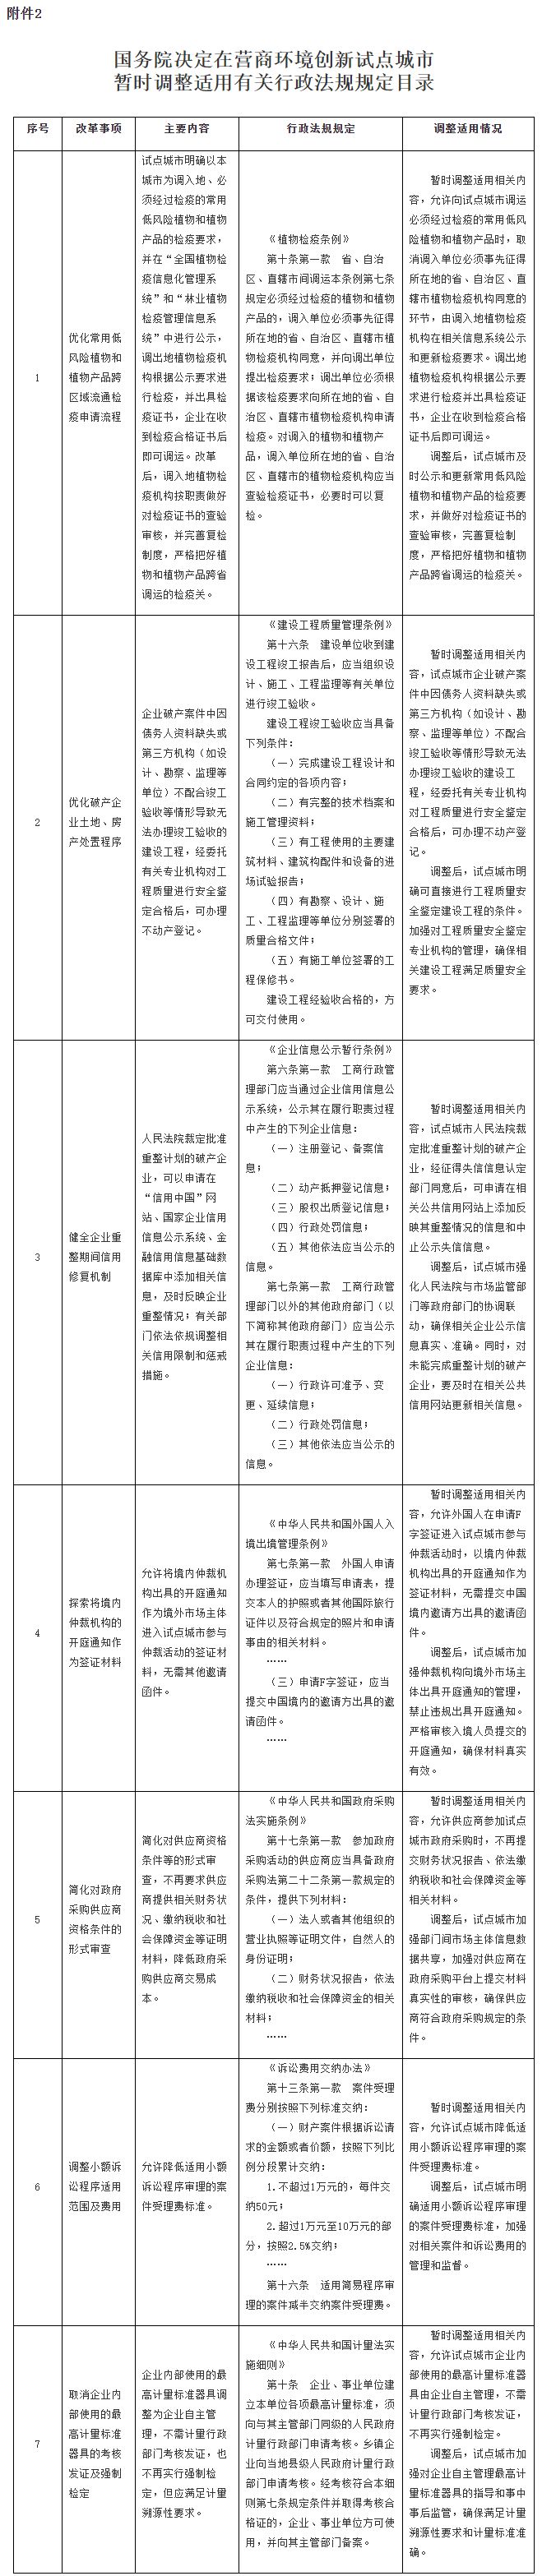 广州市场采购贸易方式试点文件(国家级市场采购贸易试点)